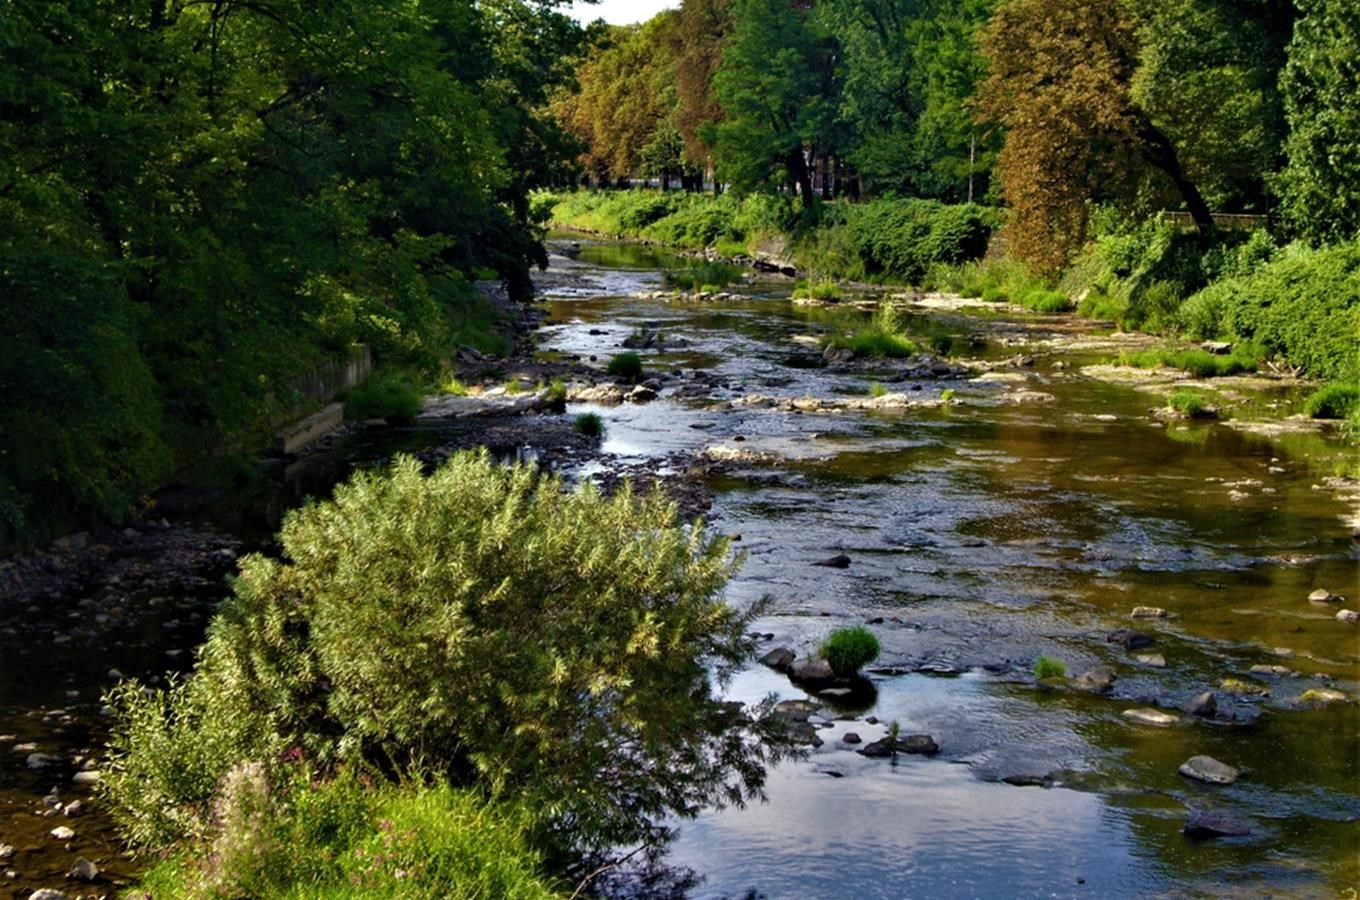 Řeka Olše – beskydský tok pramenící v Polsku